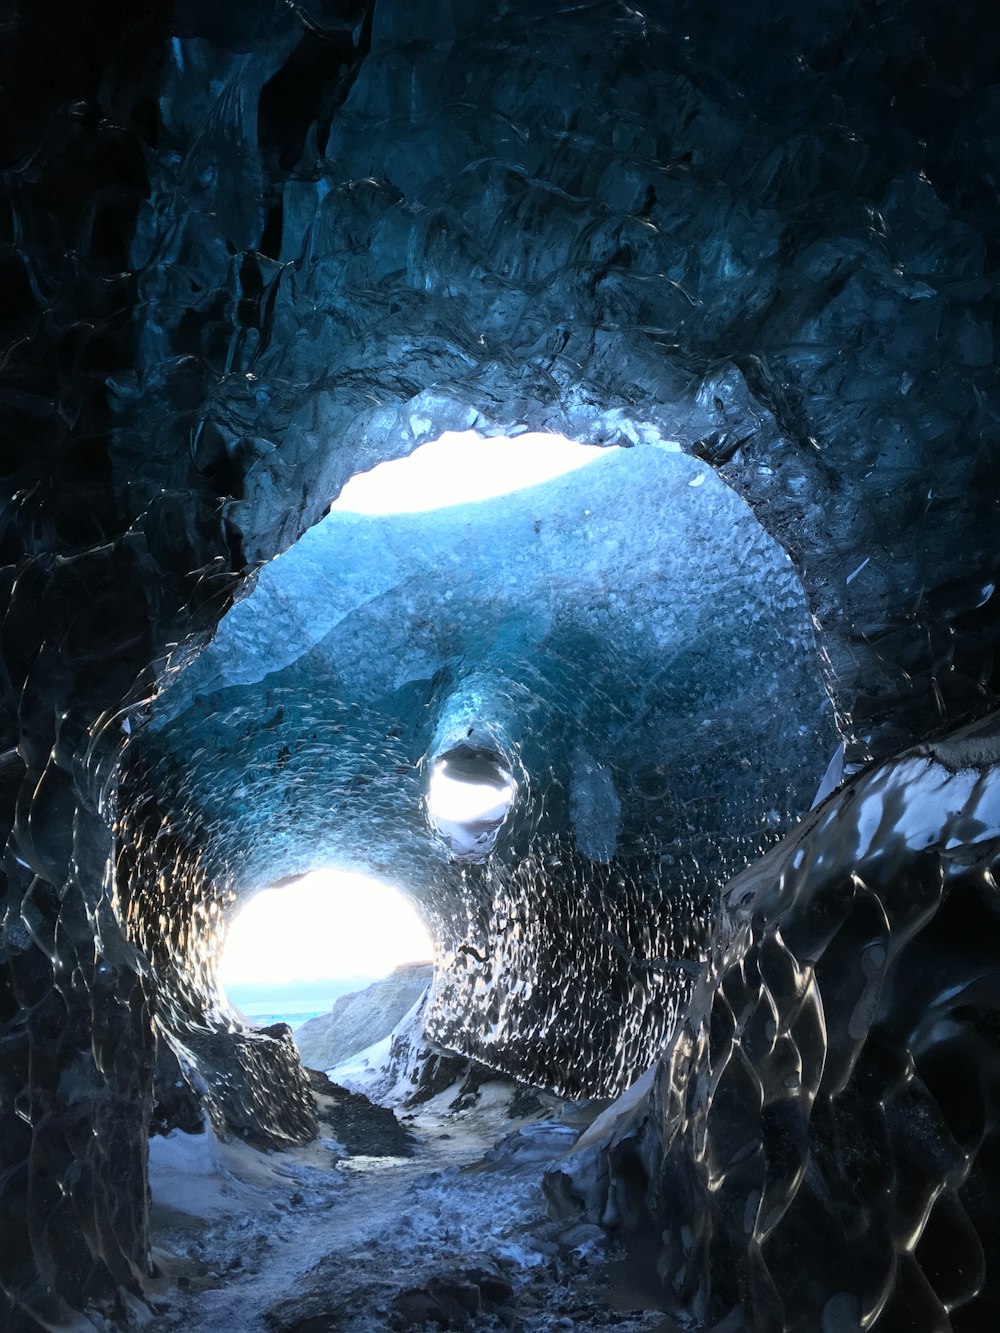 끝에 불이 켜진 커다란 얼음 동굴